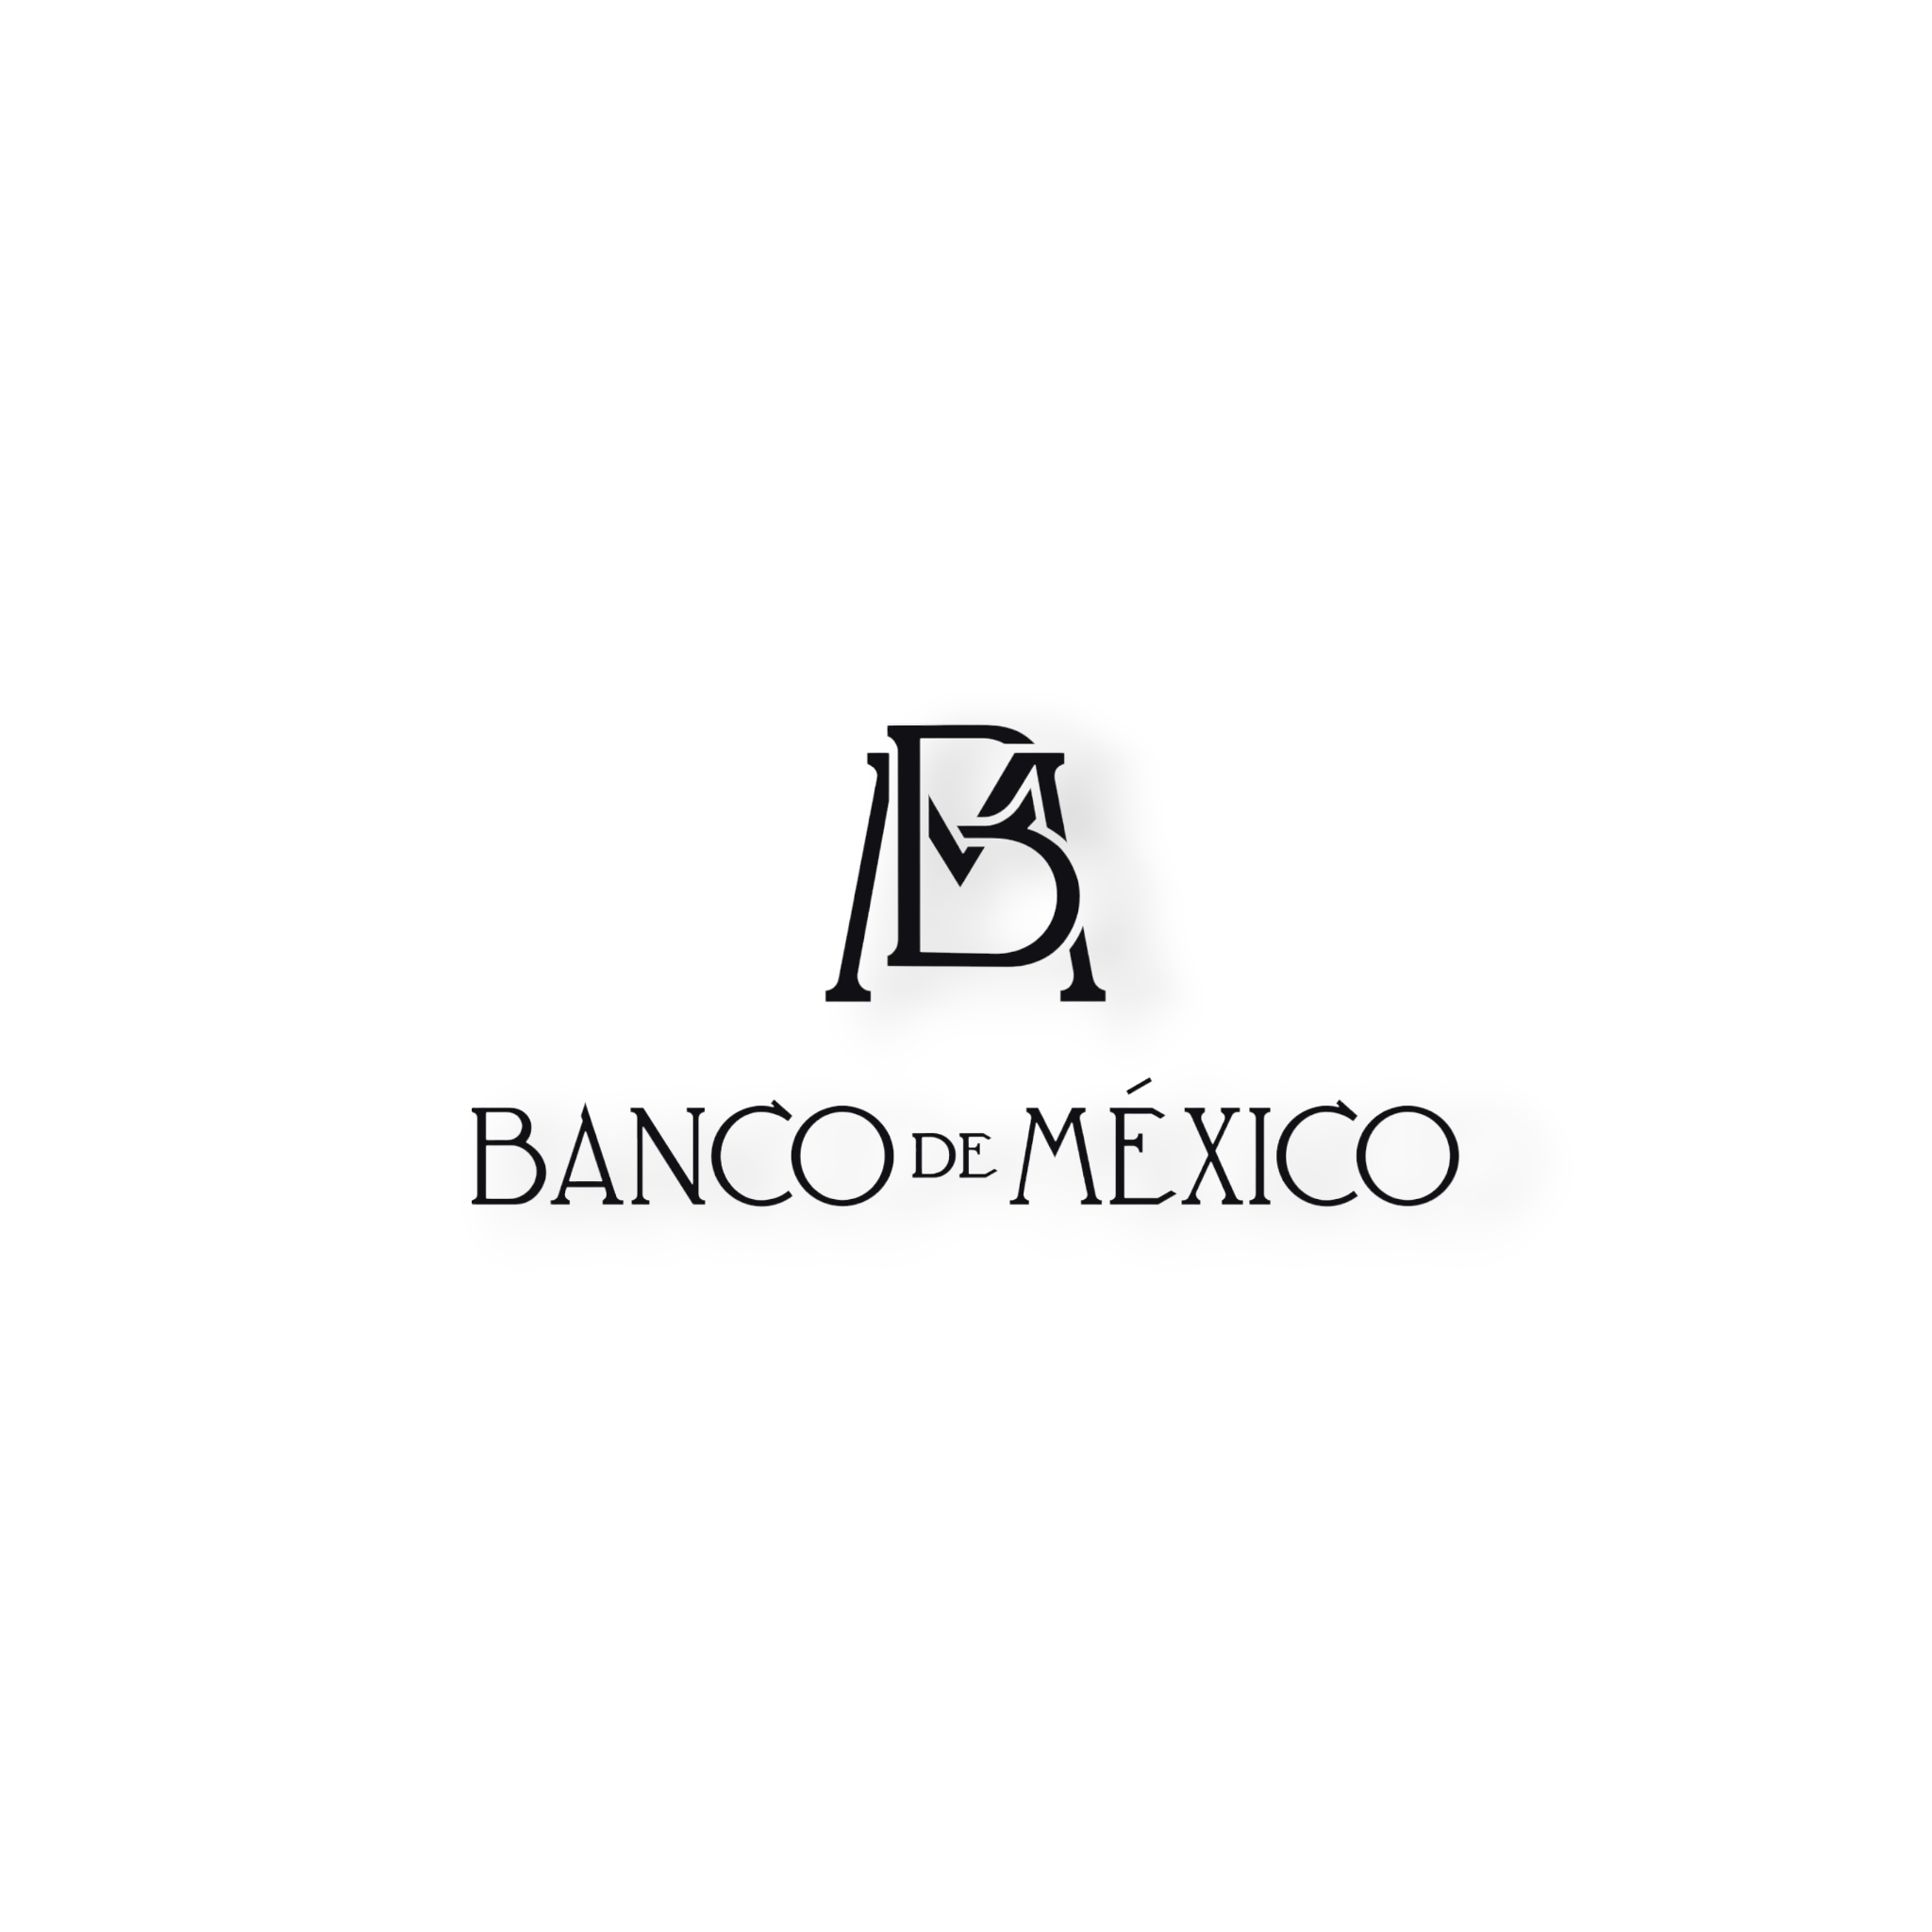 Banco de Mexico Logo